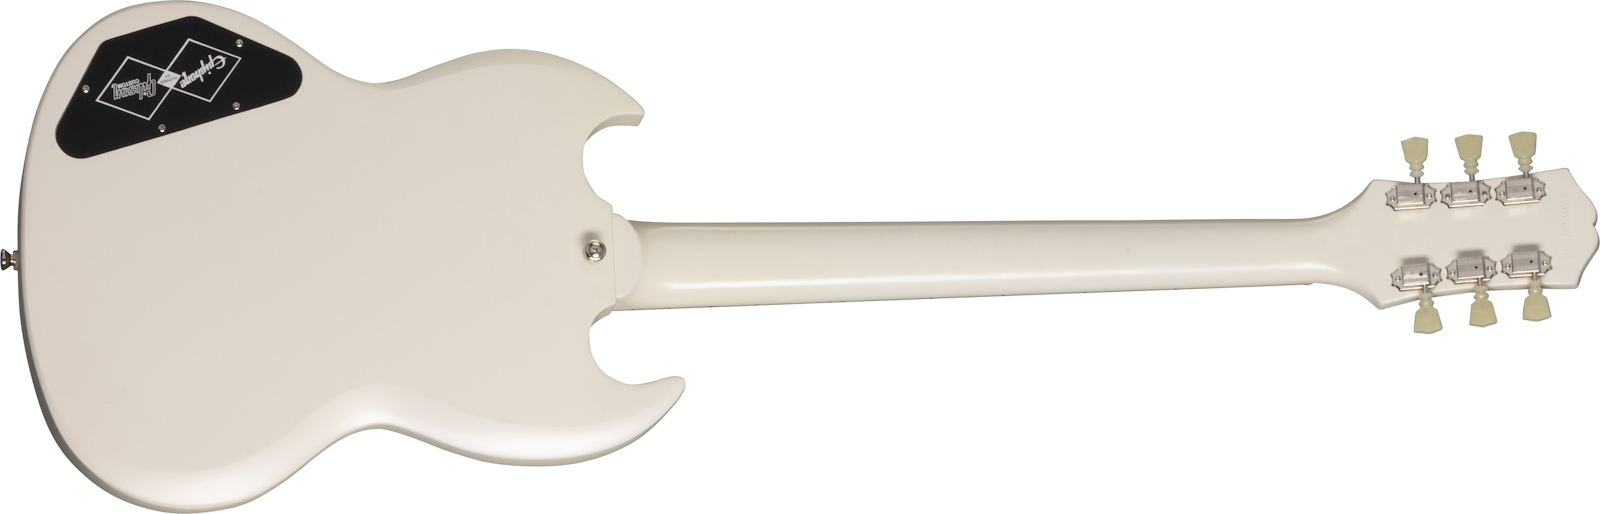 Epiphone Sg Les Paul Standard 1961 2h Ht Lau - Aged Classic White - Double Cut E-Gitarre - Variation 1